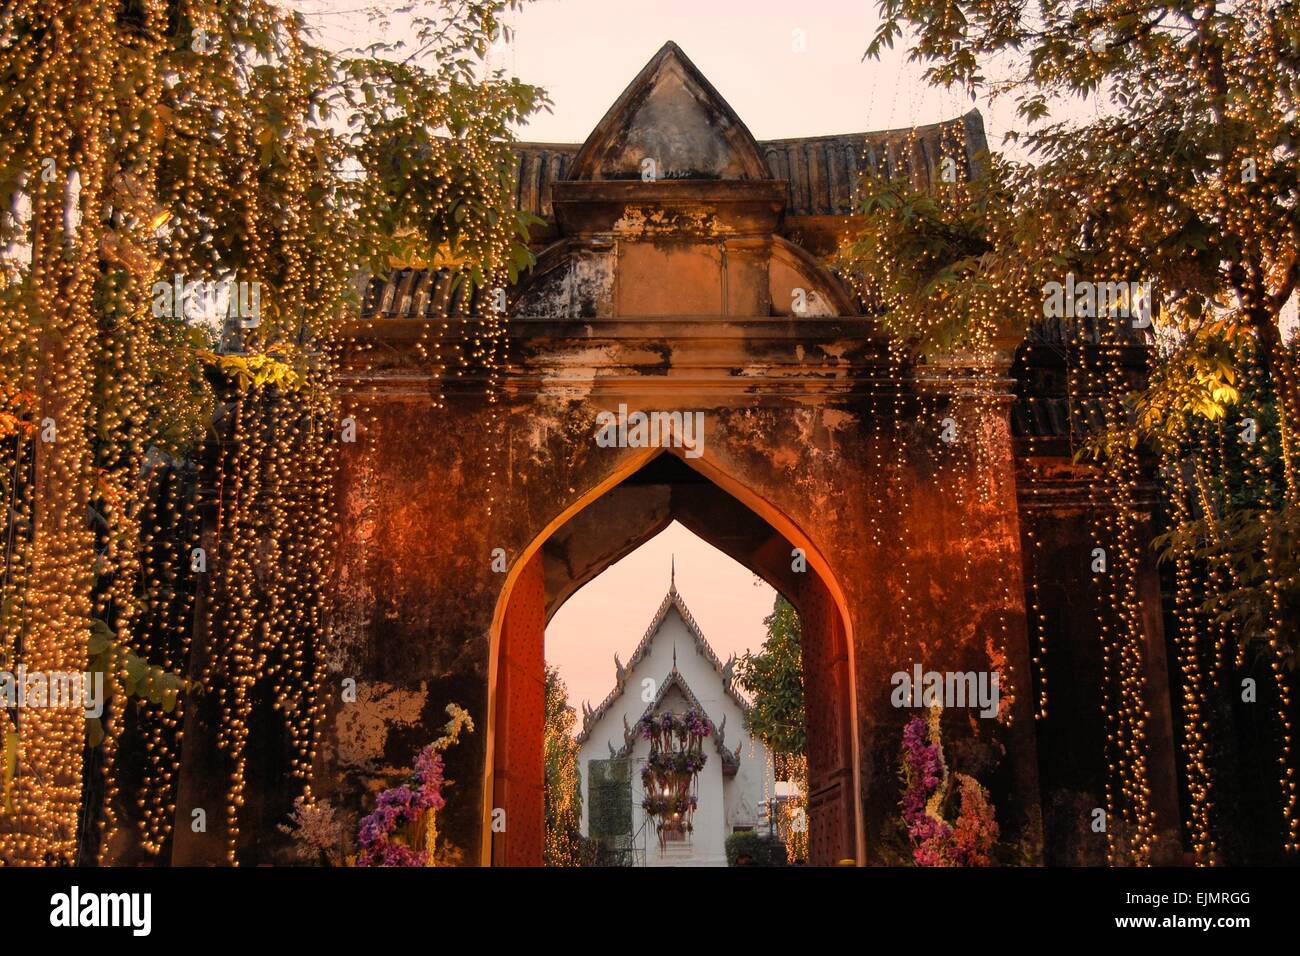 Illuminated Entrance to Royal Palace, Lopburi, Thailand Stock Photo